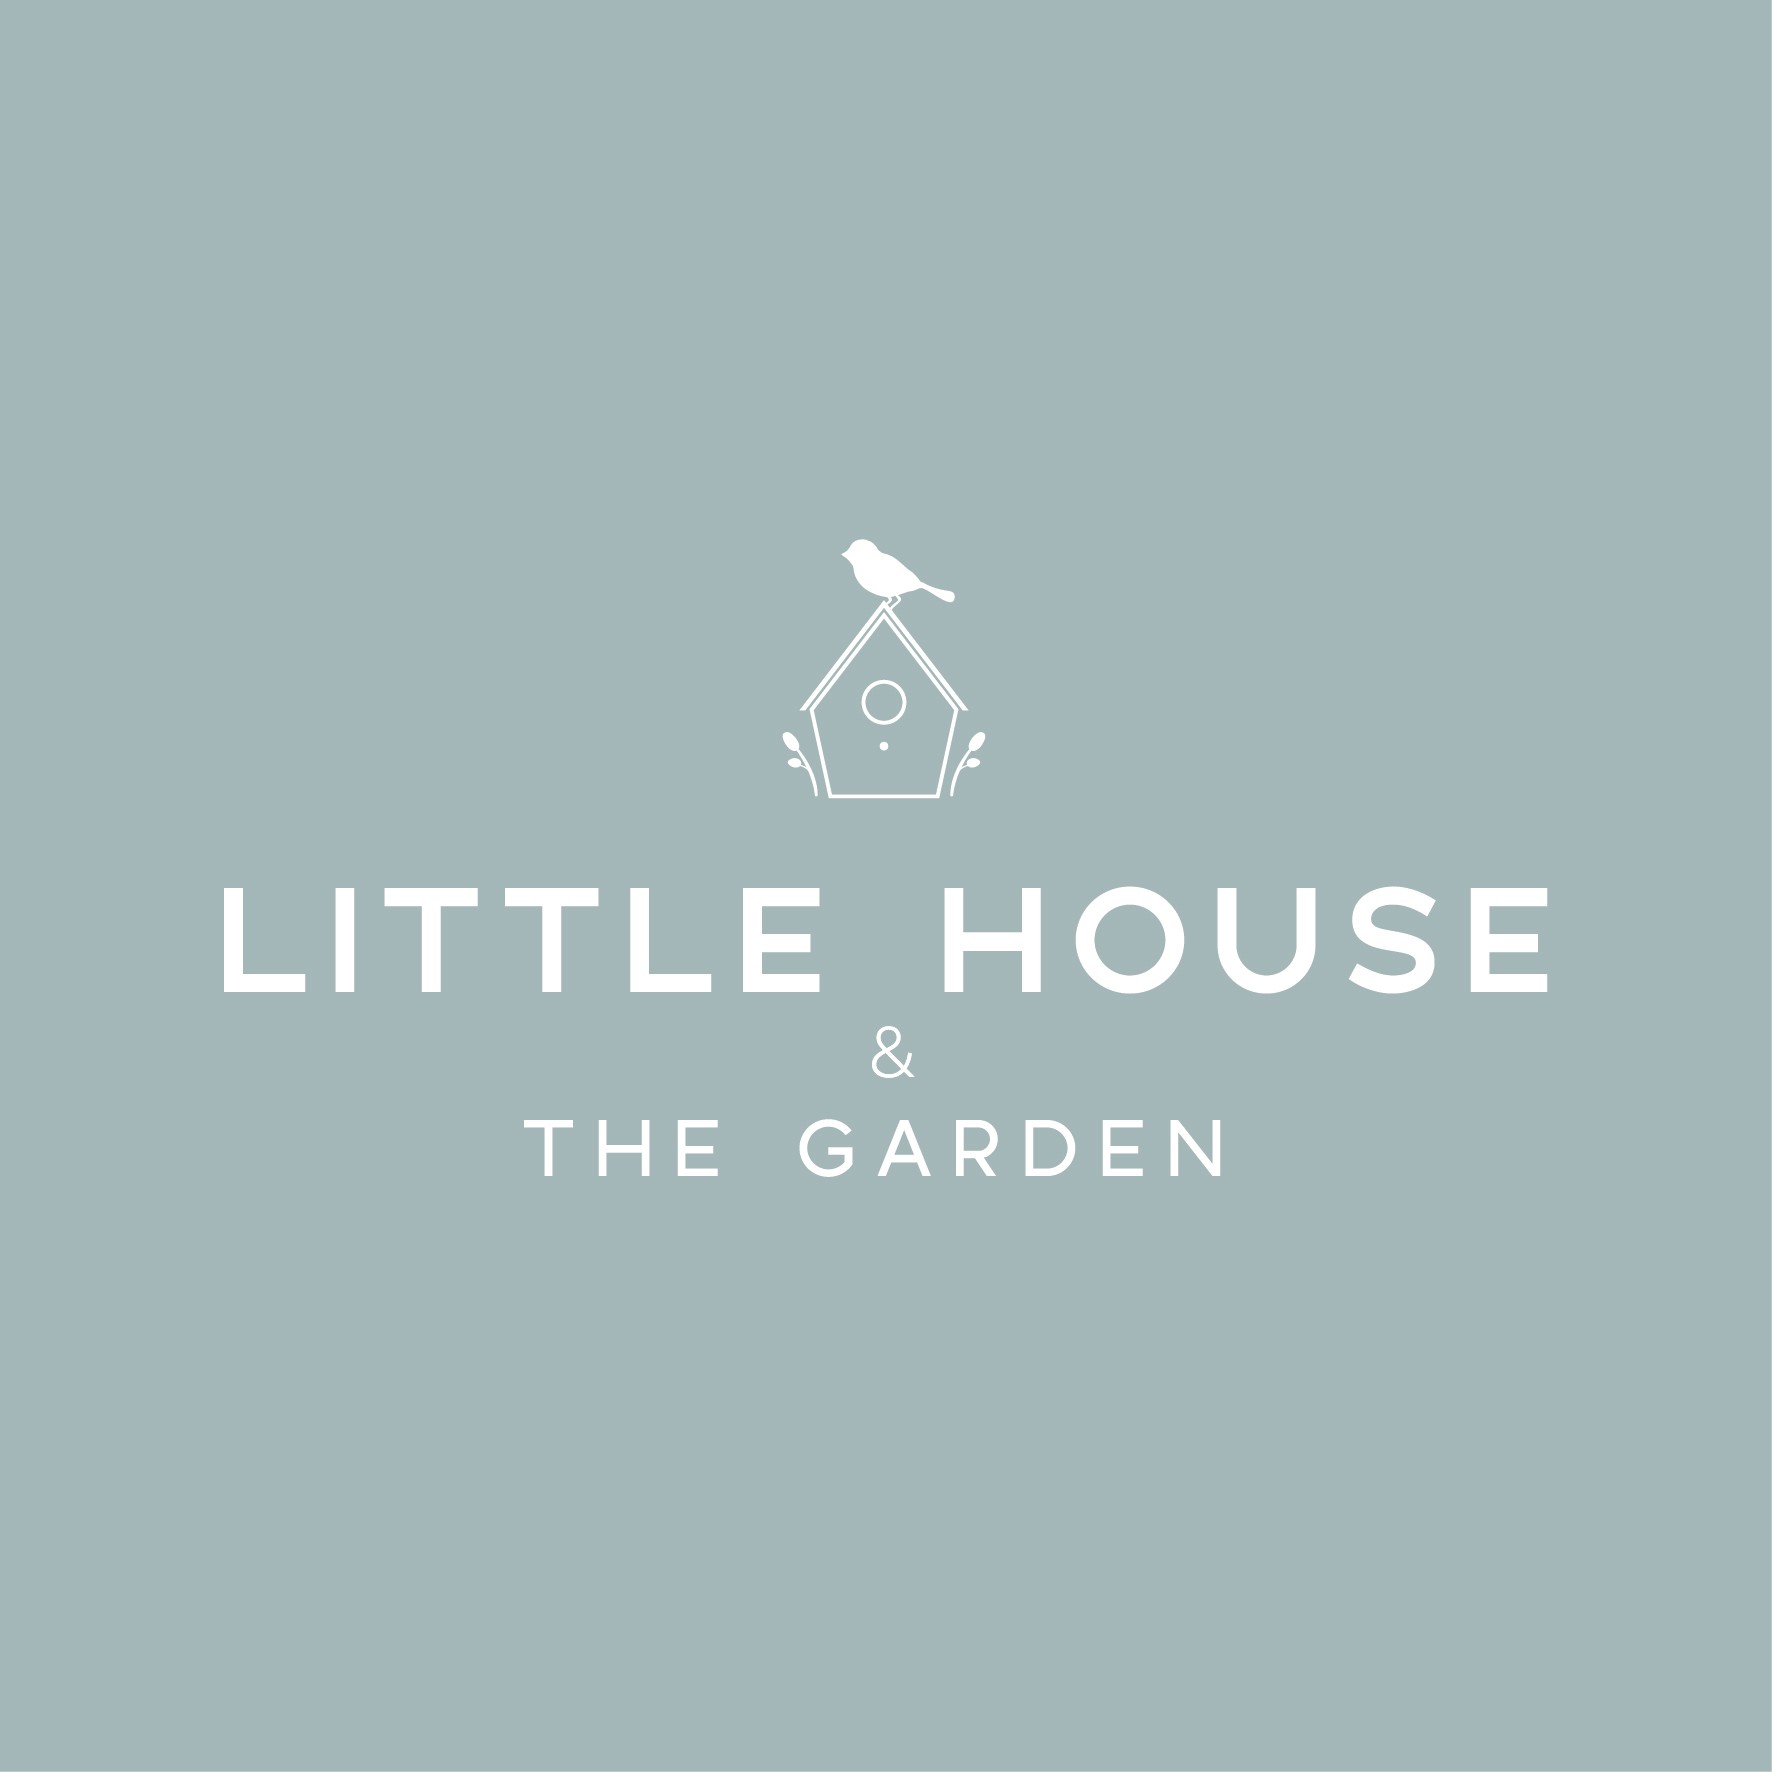 设计一个干净的和时尚的标志为新公司的小房子和花园的